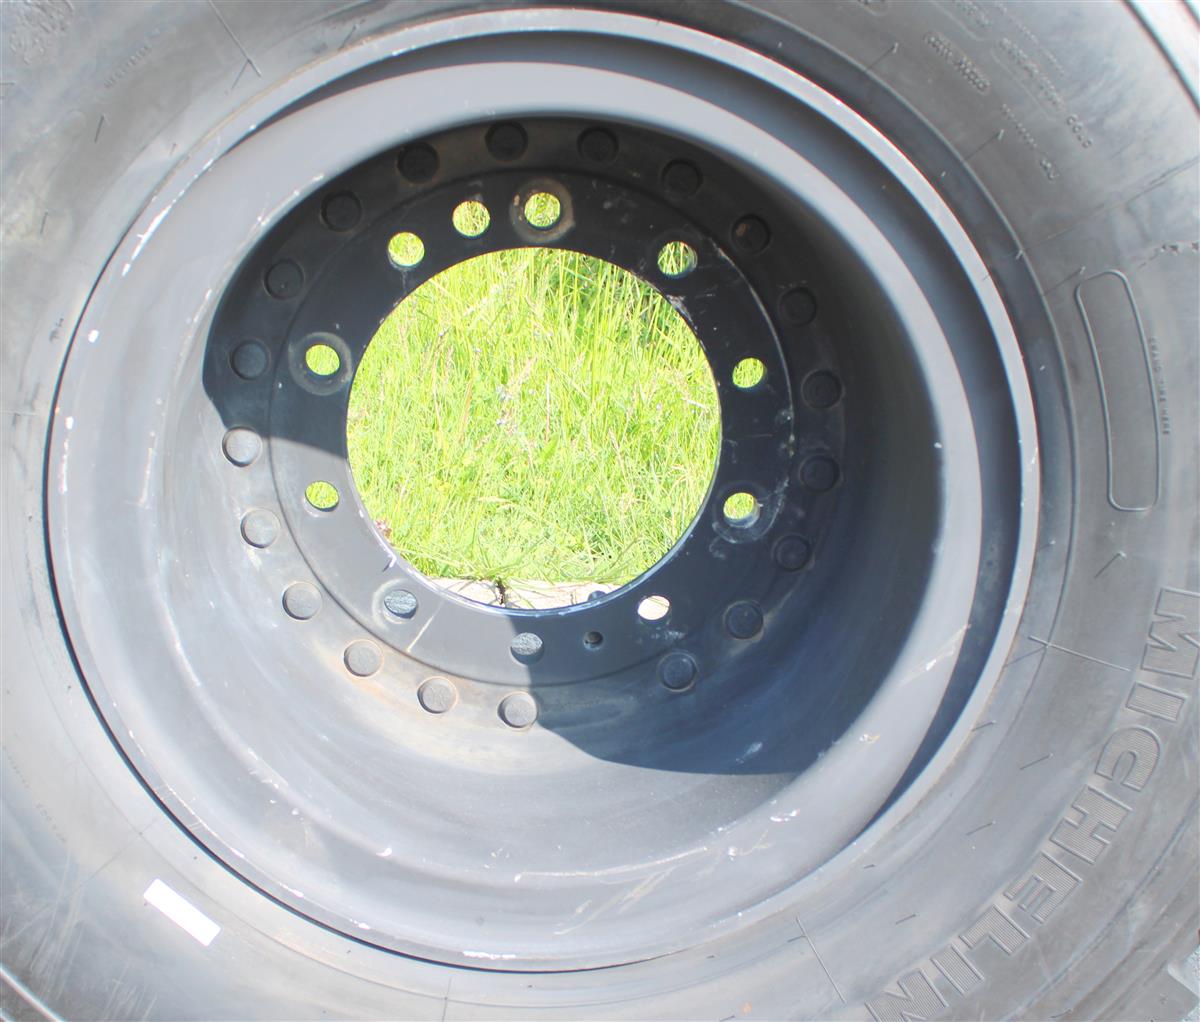 TI-1846 | TI-1846 Michelin 39585R20 XZL Tire Mounted on Hutchinson Aluminum Rim  (4).JPG